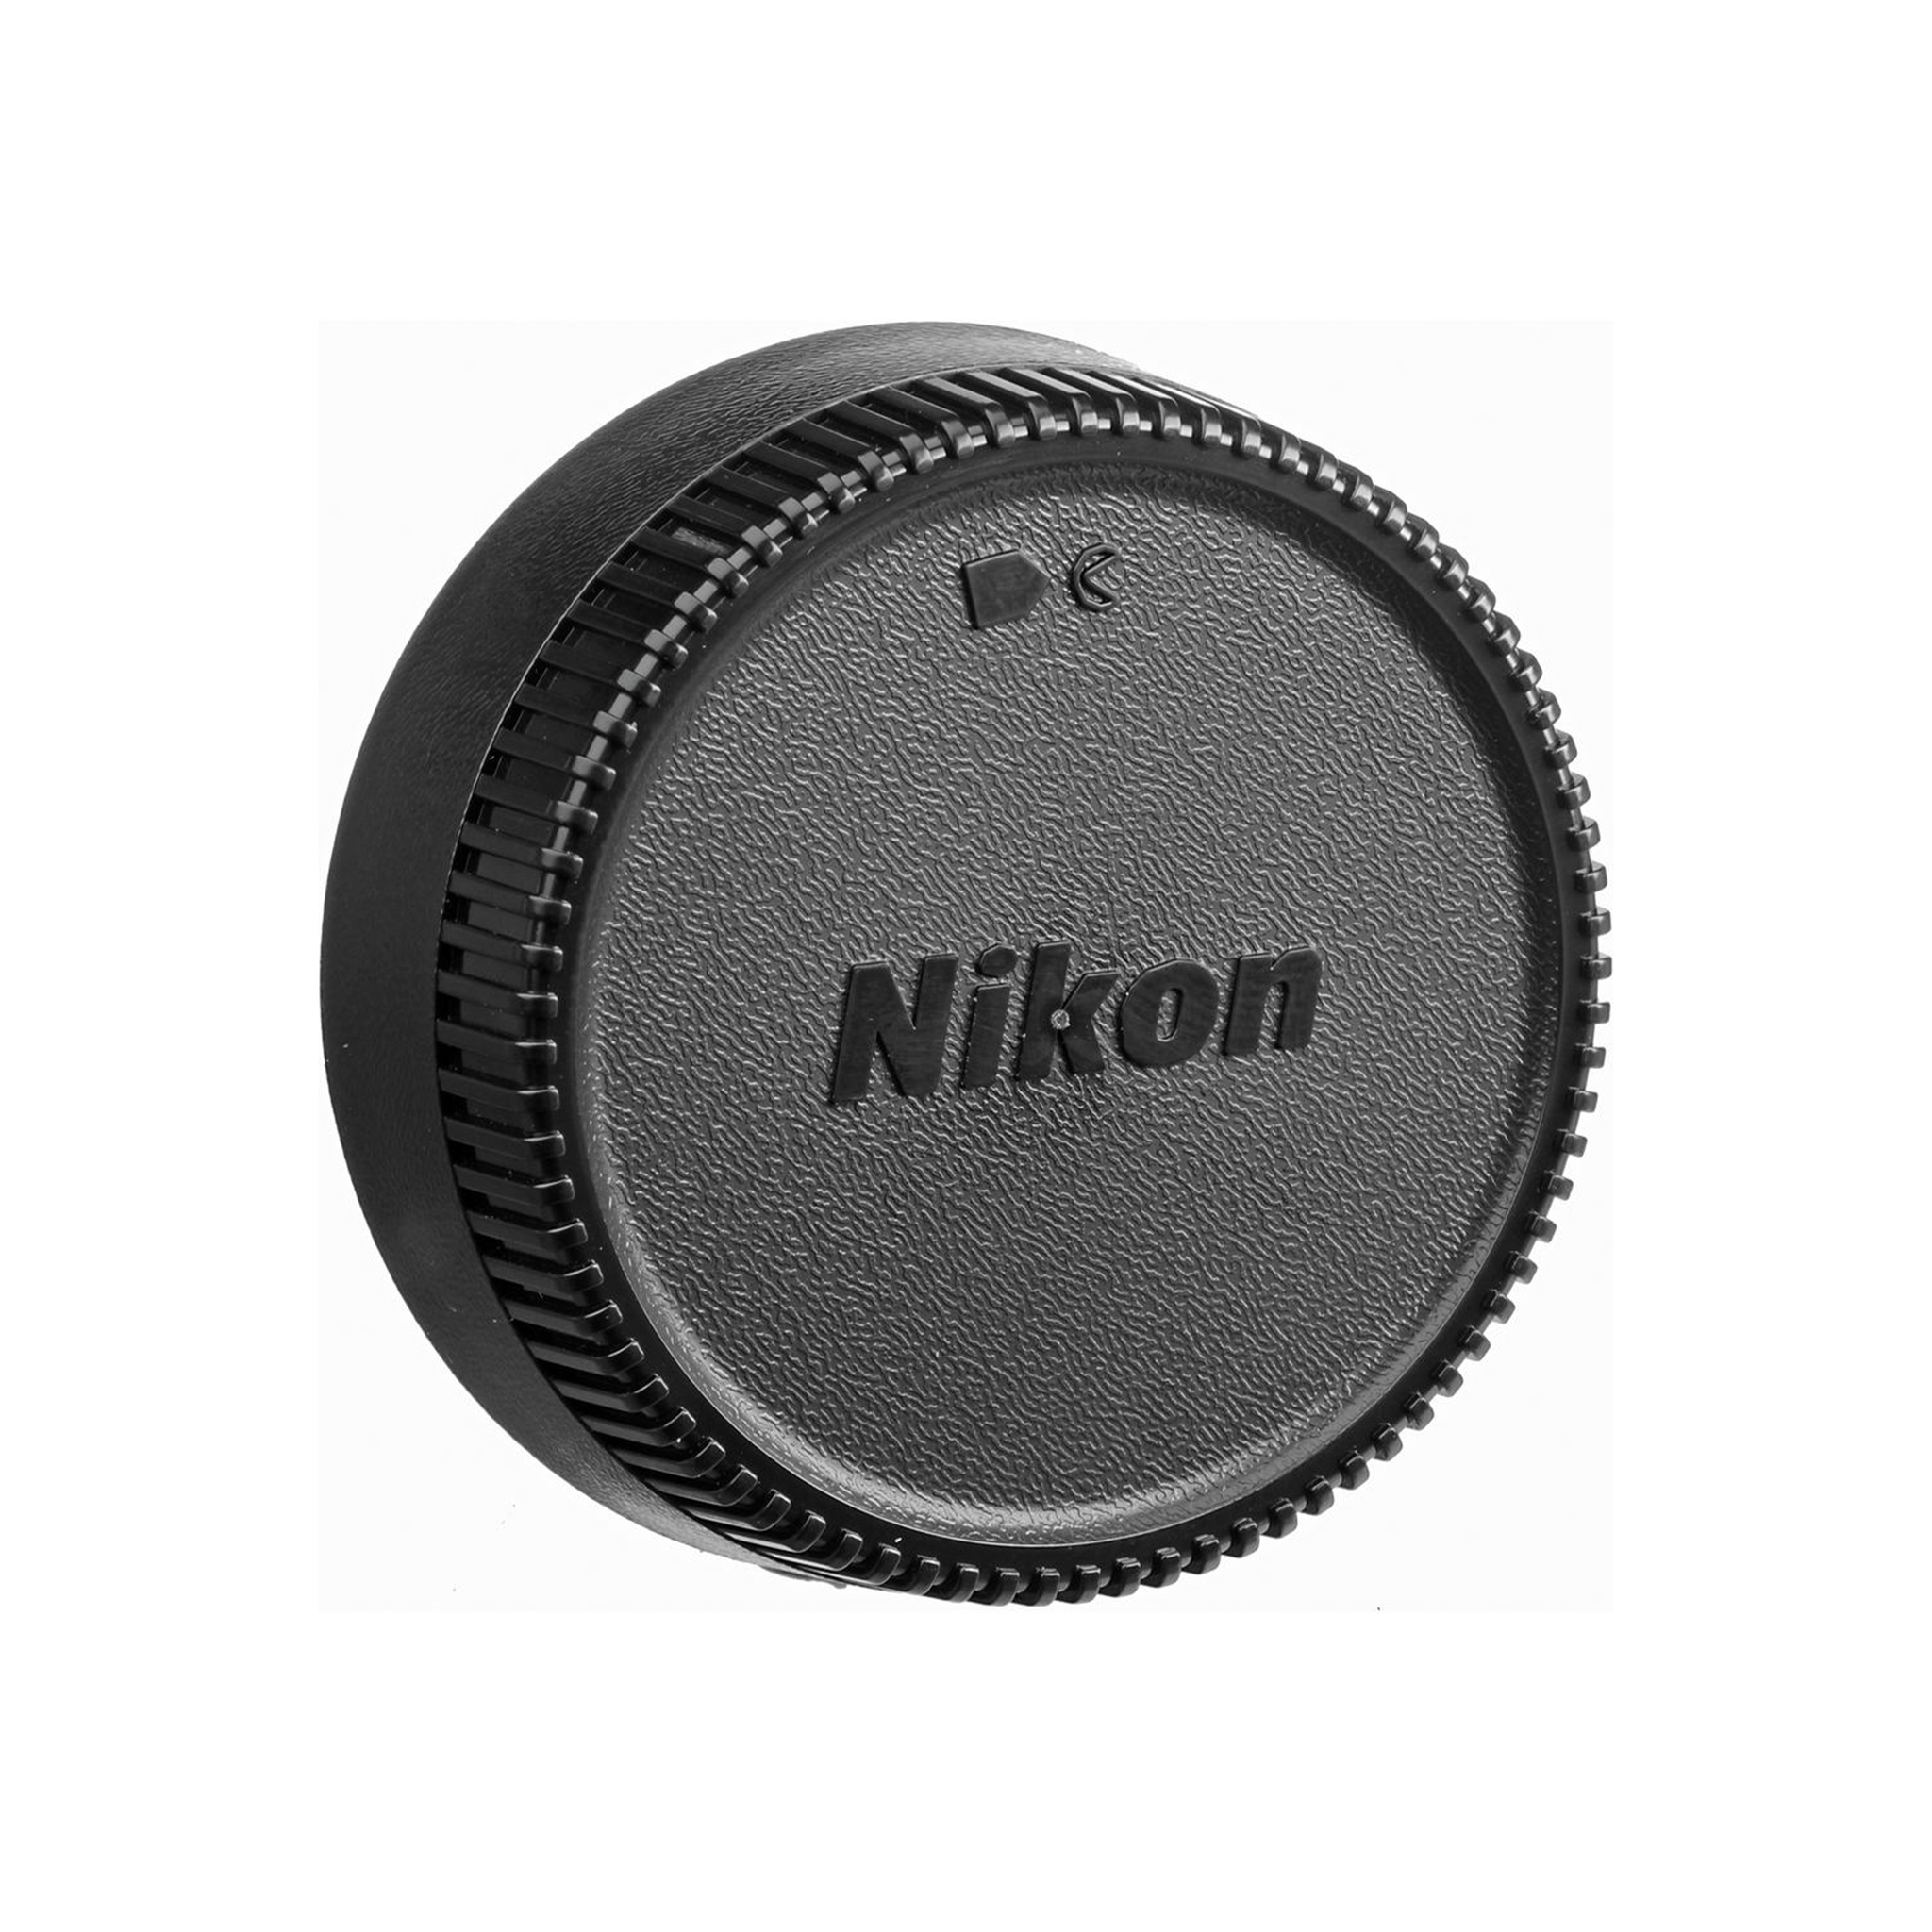 Nikon AF-S DX-NIKKOR 12-24mm f/4G IF-ED Lens-Camera Lenses-futuromic